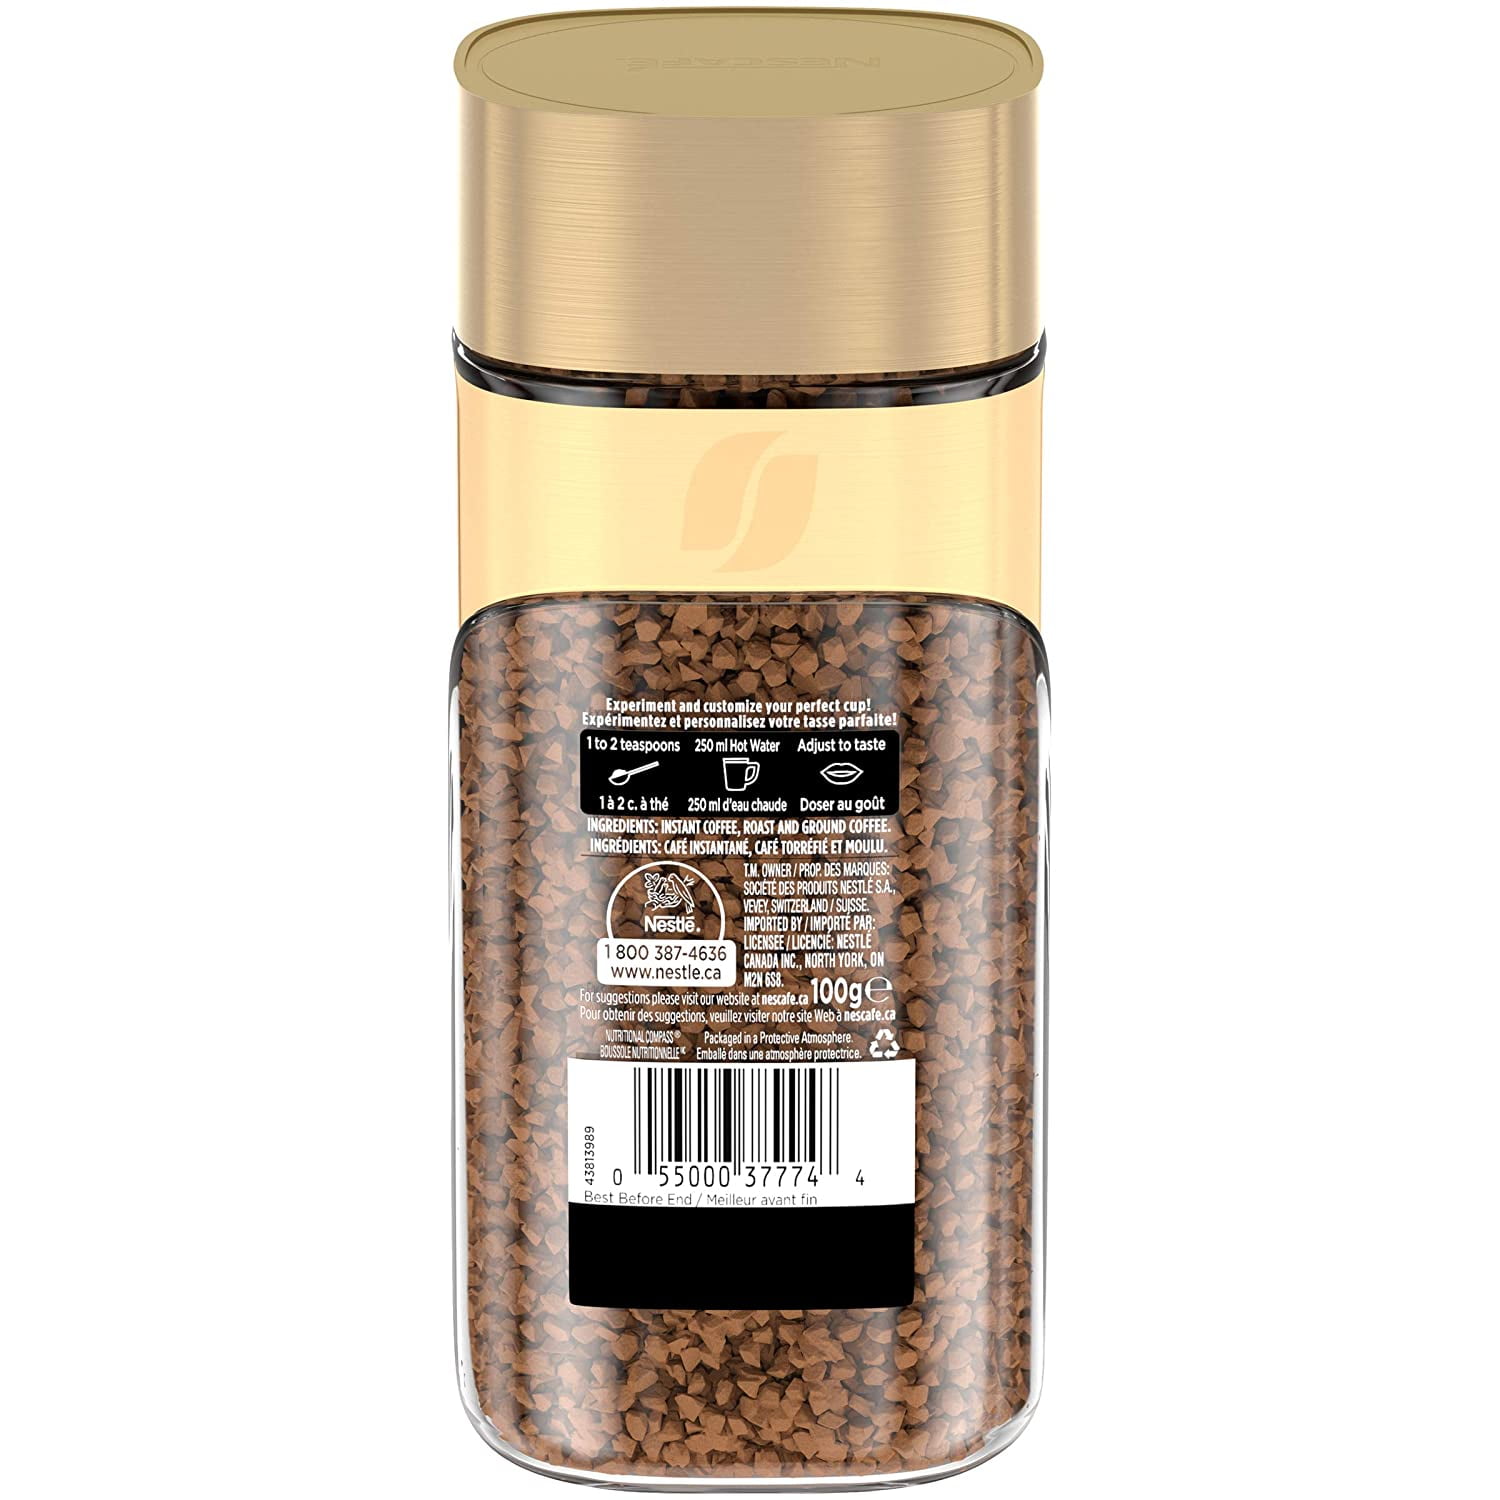 NESCAF Gold Medium Roast Coffee, Jar 100g Instant